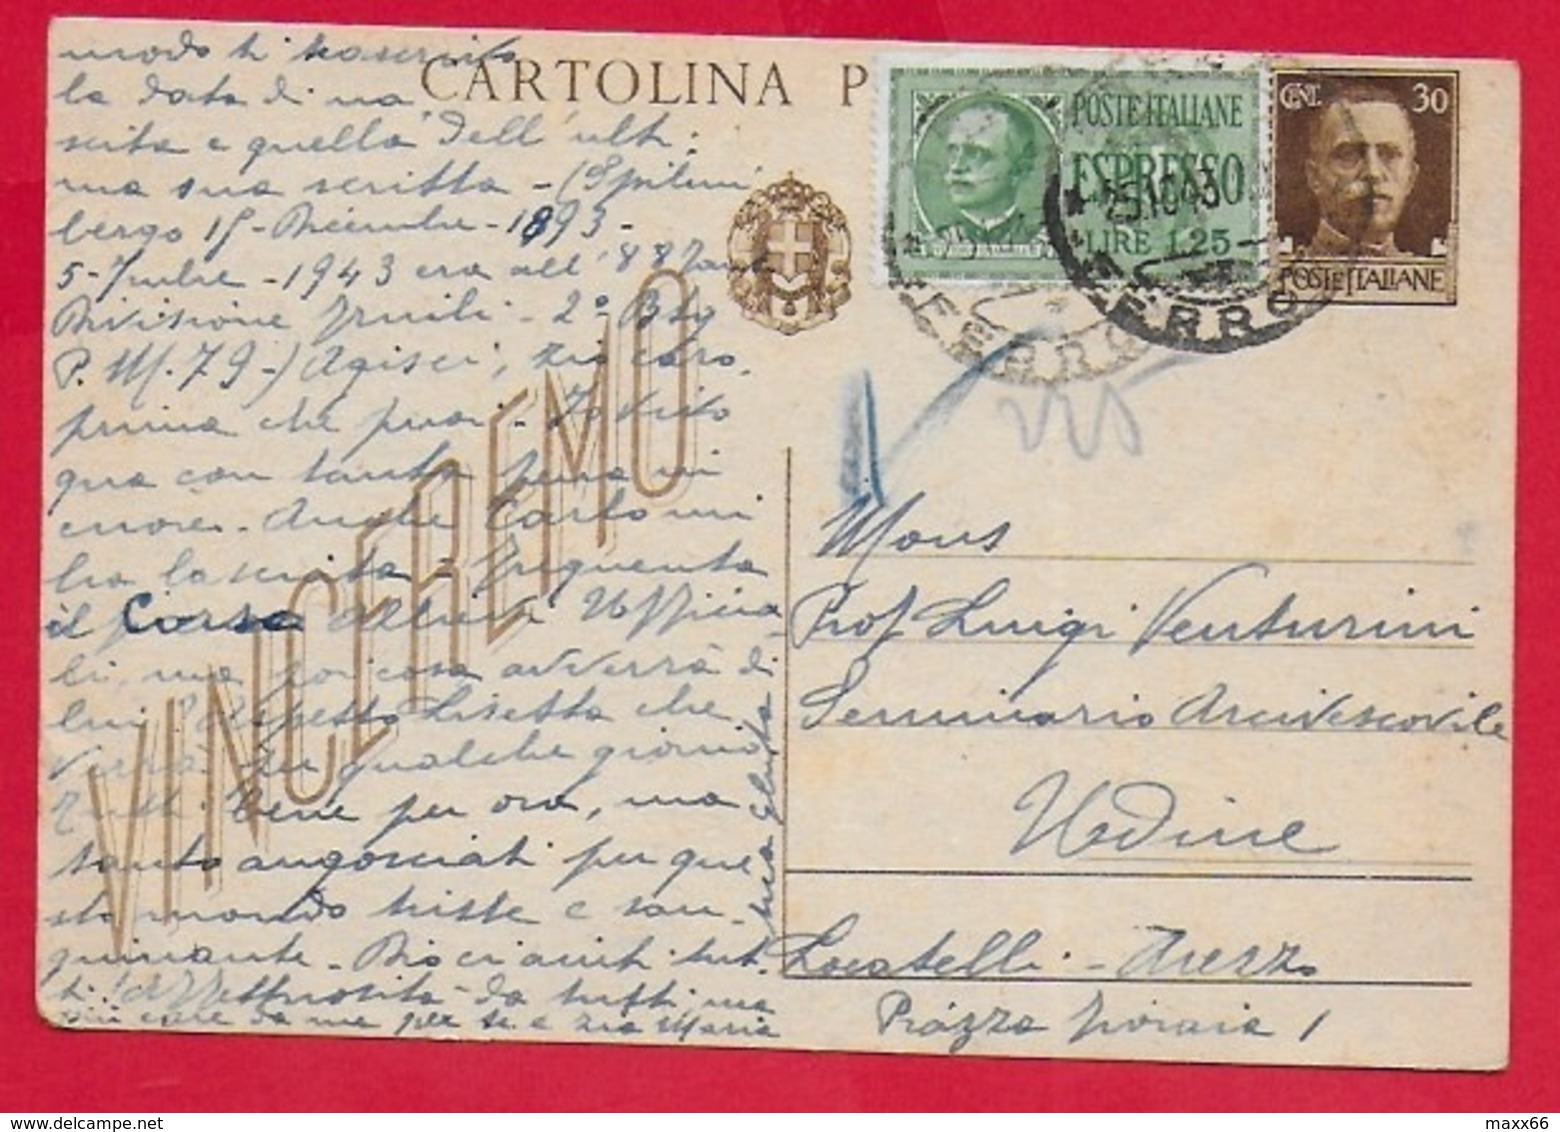 CARTOLINA POSTALE VG ITALIA - 1942 IMPERIALE VINCEREMO 30 Cent - U. CP 98 - Espresso - 10 X 15 - 1943 - Interi Postali